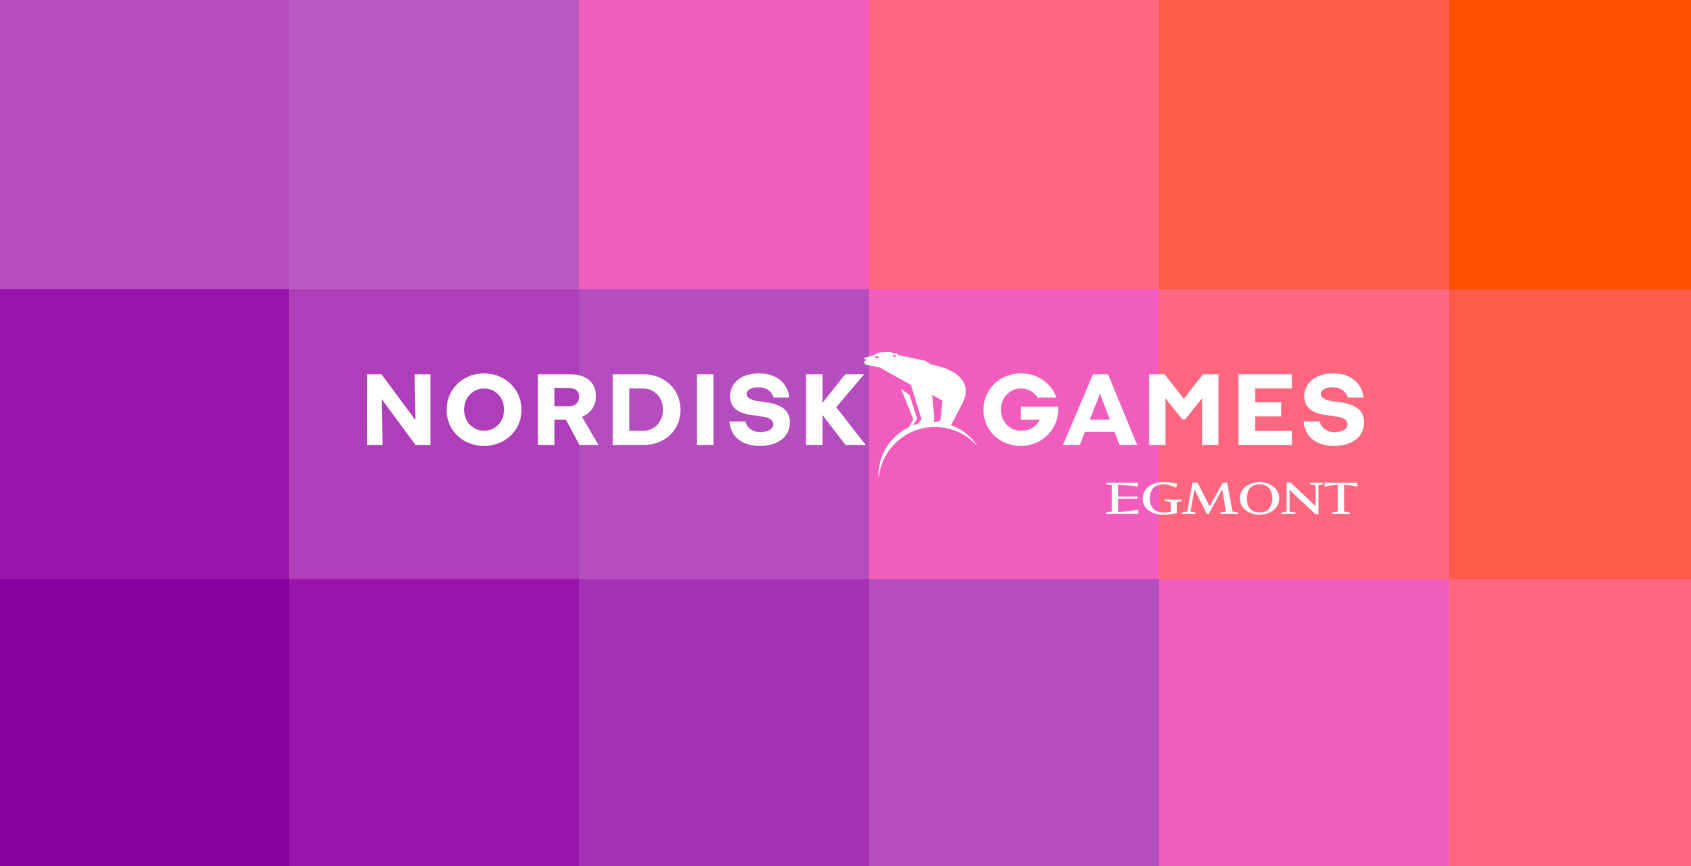 Die Macher von Until Dawn haben sich der Nordisk Games-Familie angeschlossen. Jetzt sind sie zusammen mit den Autoren von Just Cause